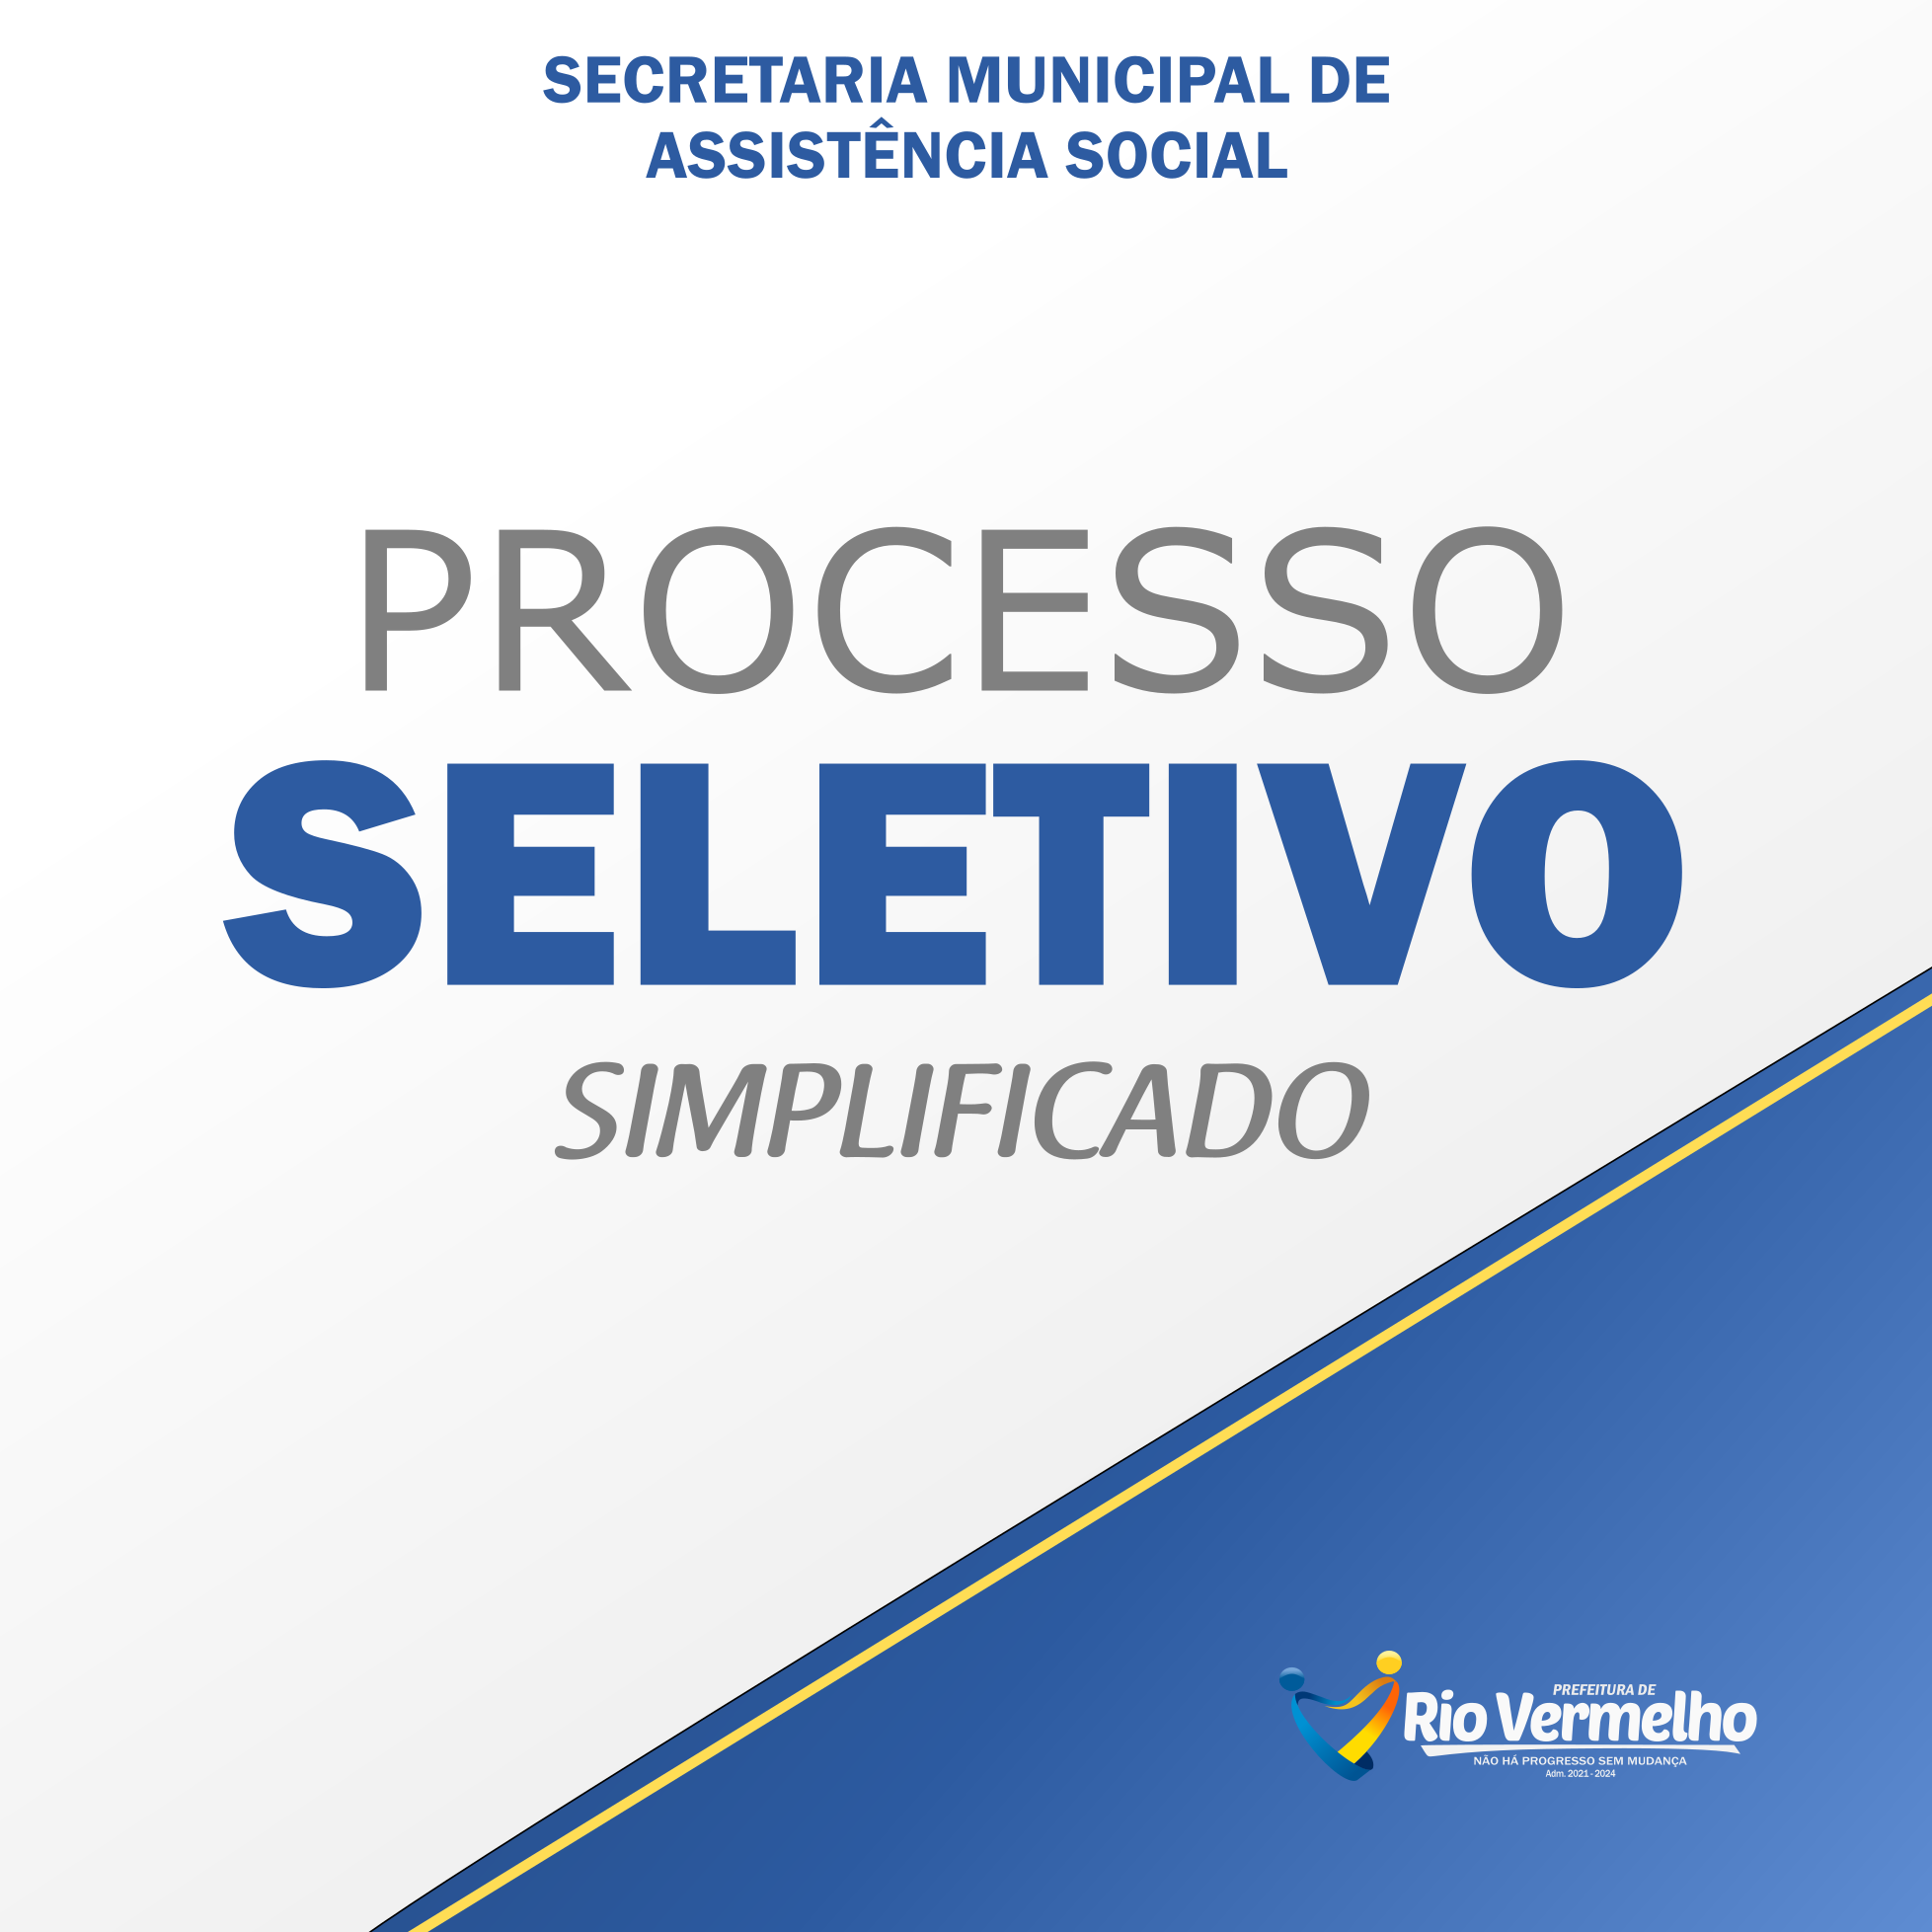 You are currently viewing PROCESSO SELETIVO SIMPLIFICADO Nº 005/2021 – SECRETARIA MUNICIPAL DE ASSISTÊNCIA SOCIAL